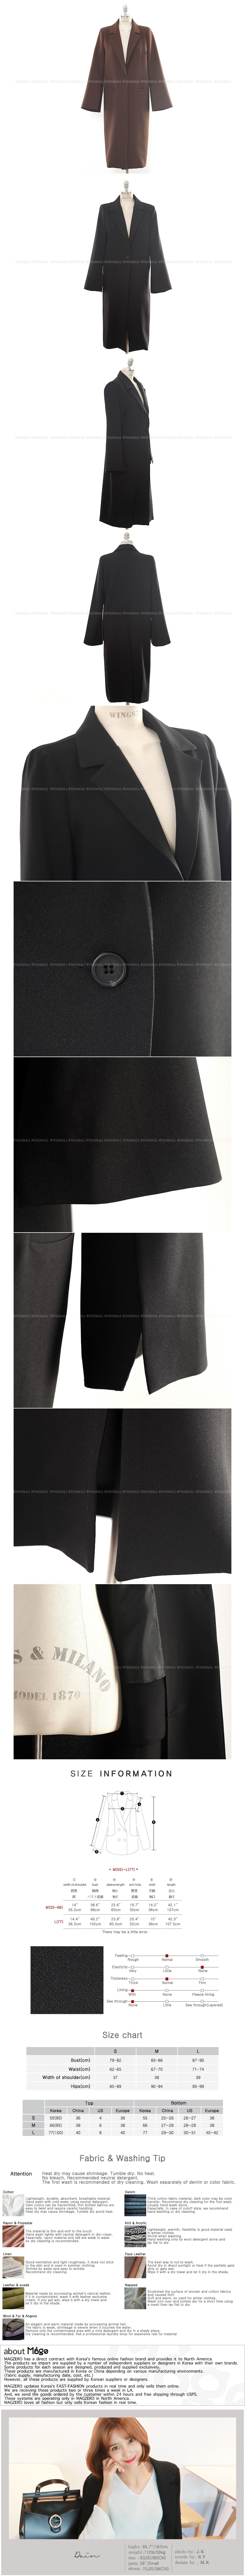 KOREA One-Button Long Blazer Black M(S-M/55-66) [Free Shipping]